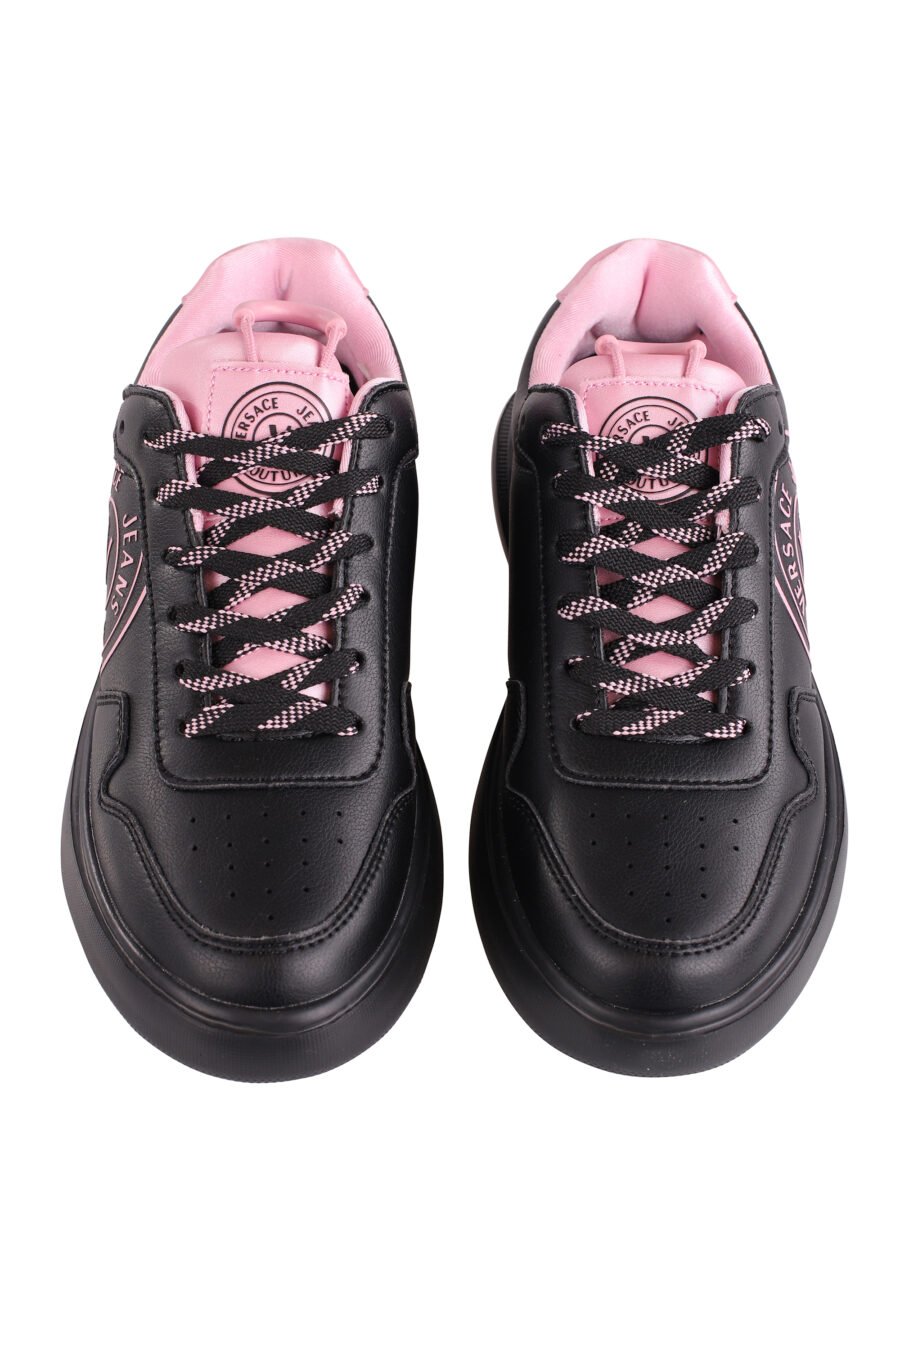 Zapatillas negras con detalles y logo rosa - IMG 9112